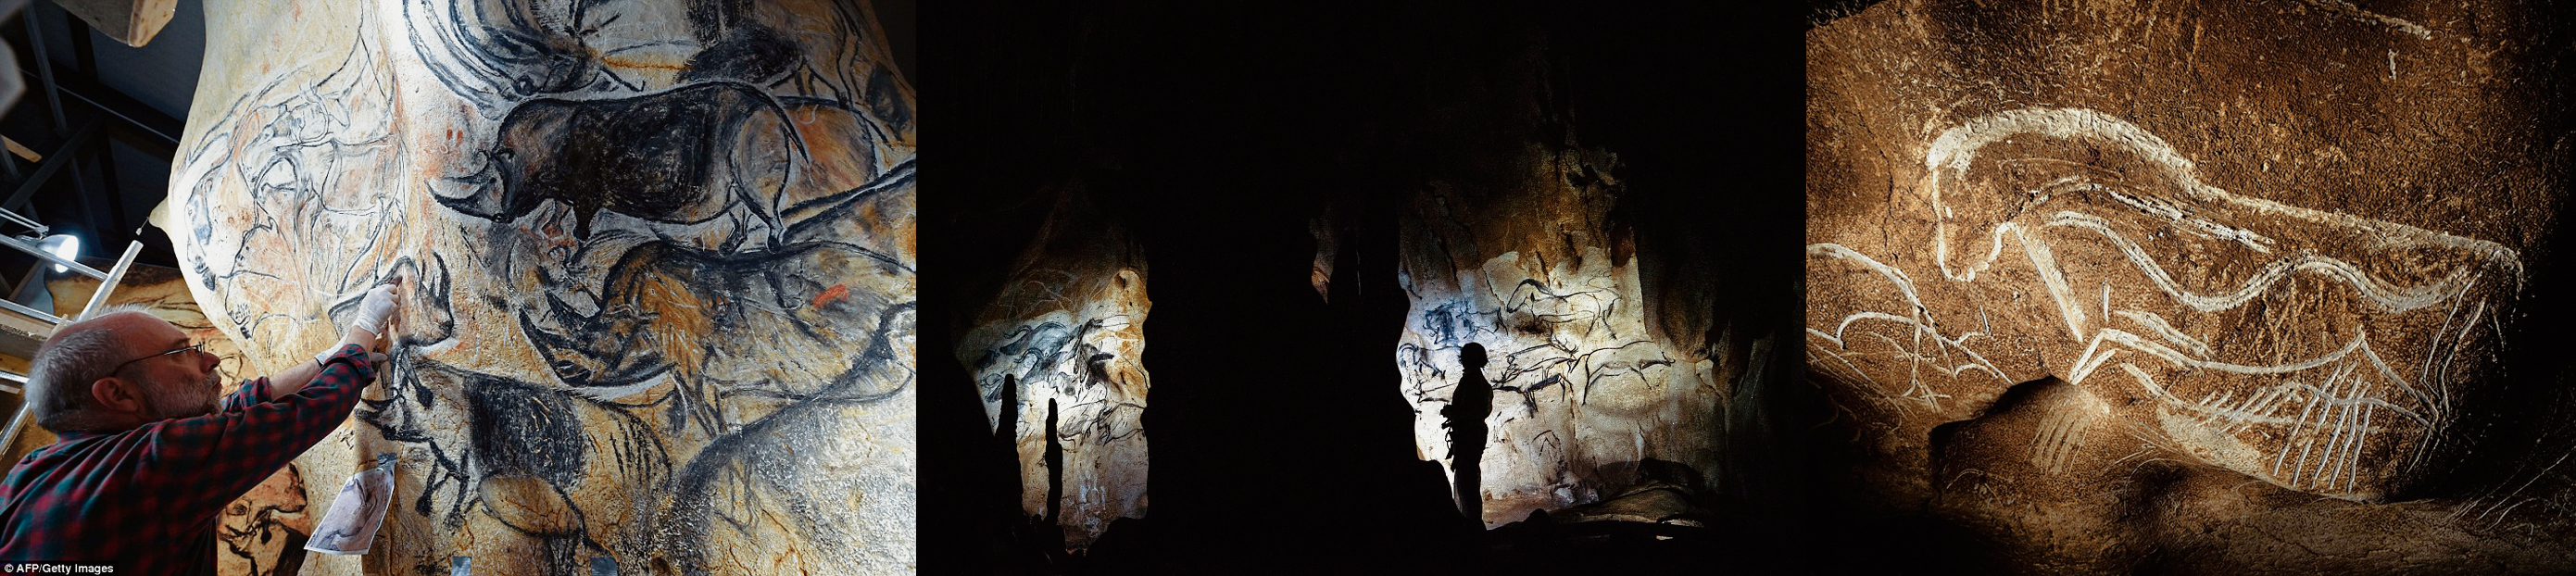 Cave Paintings Rock Art Chauvet Cave France